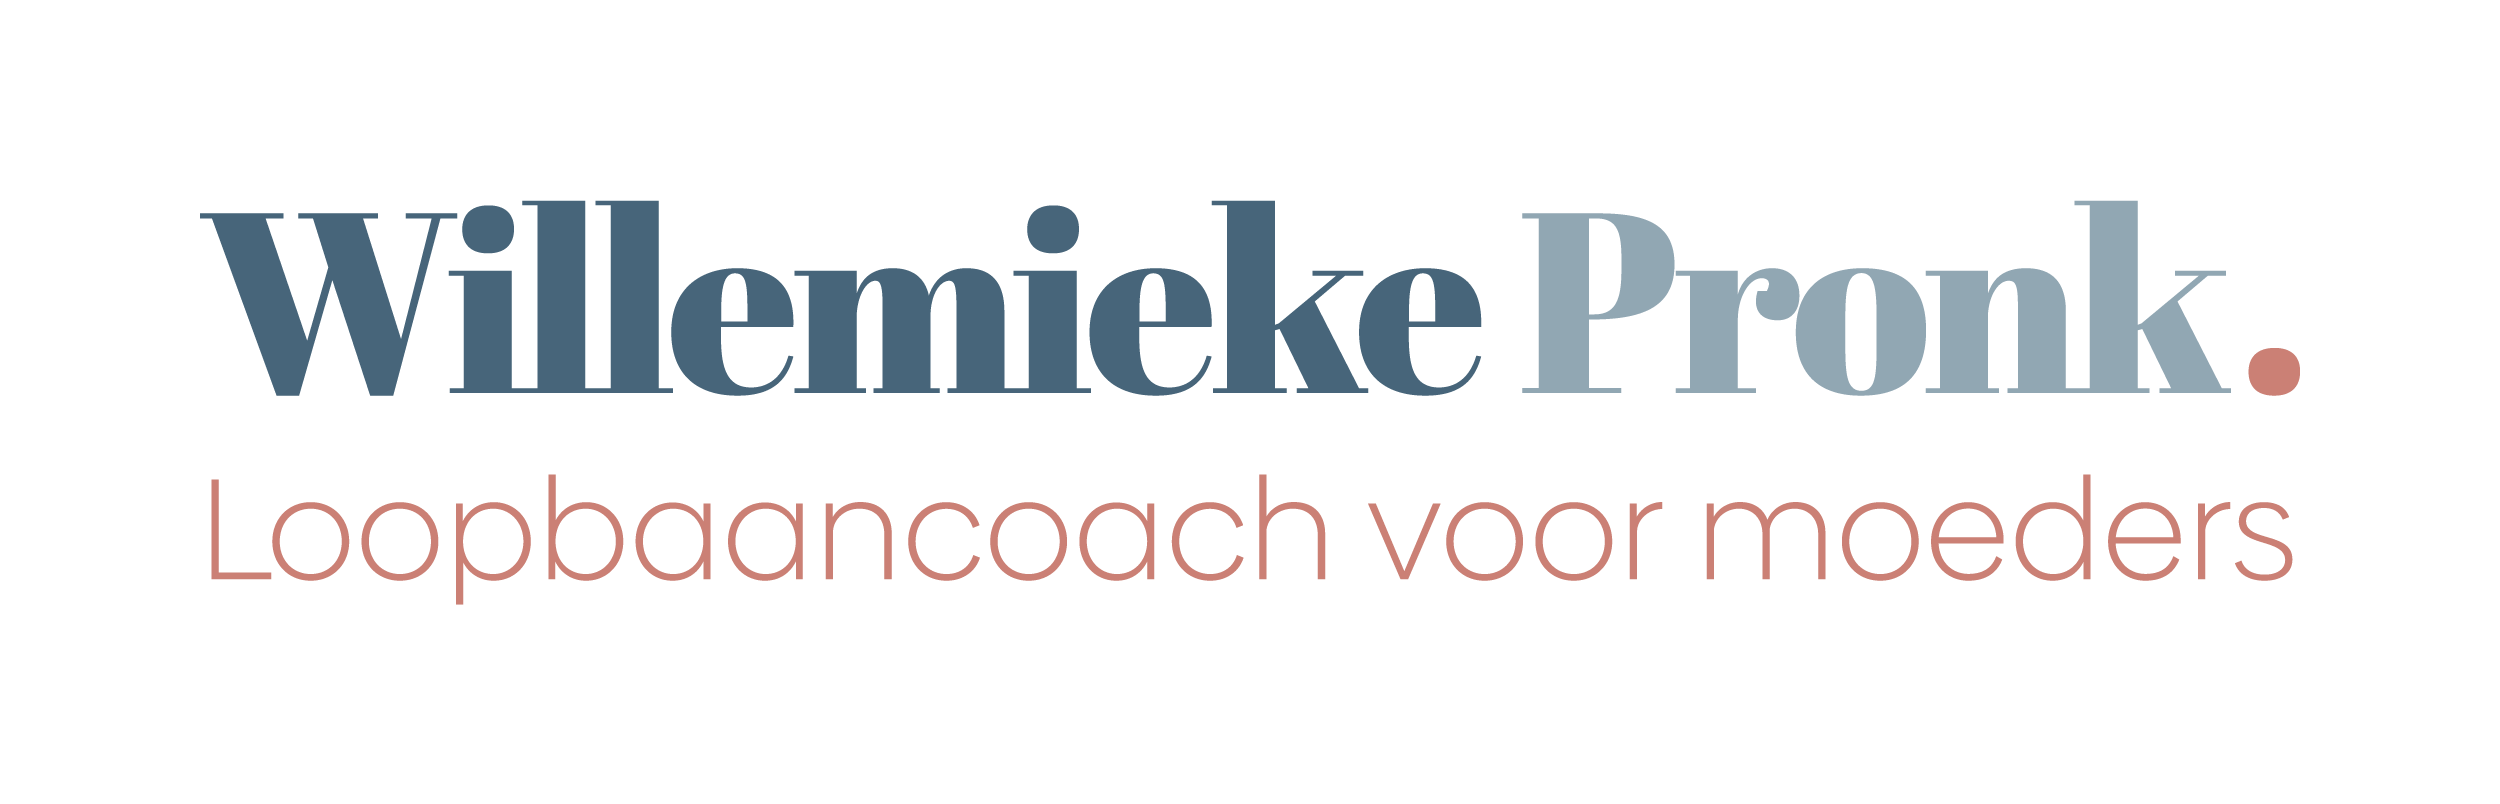 Willemieke Pronk